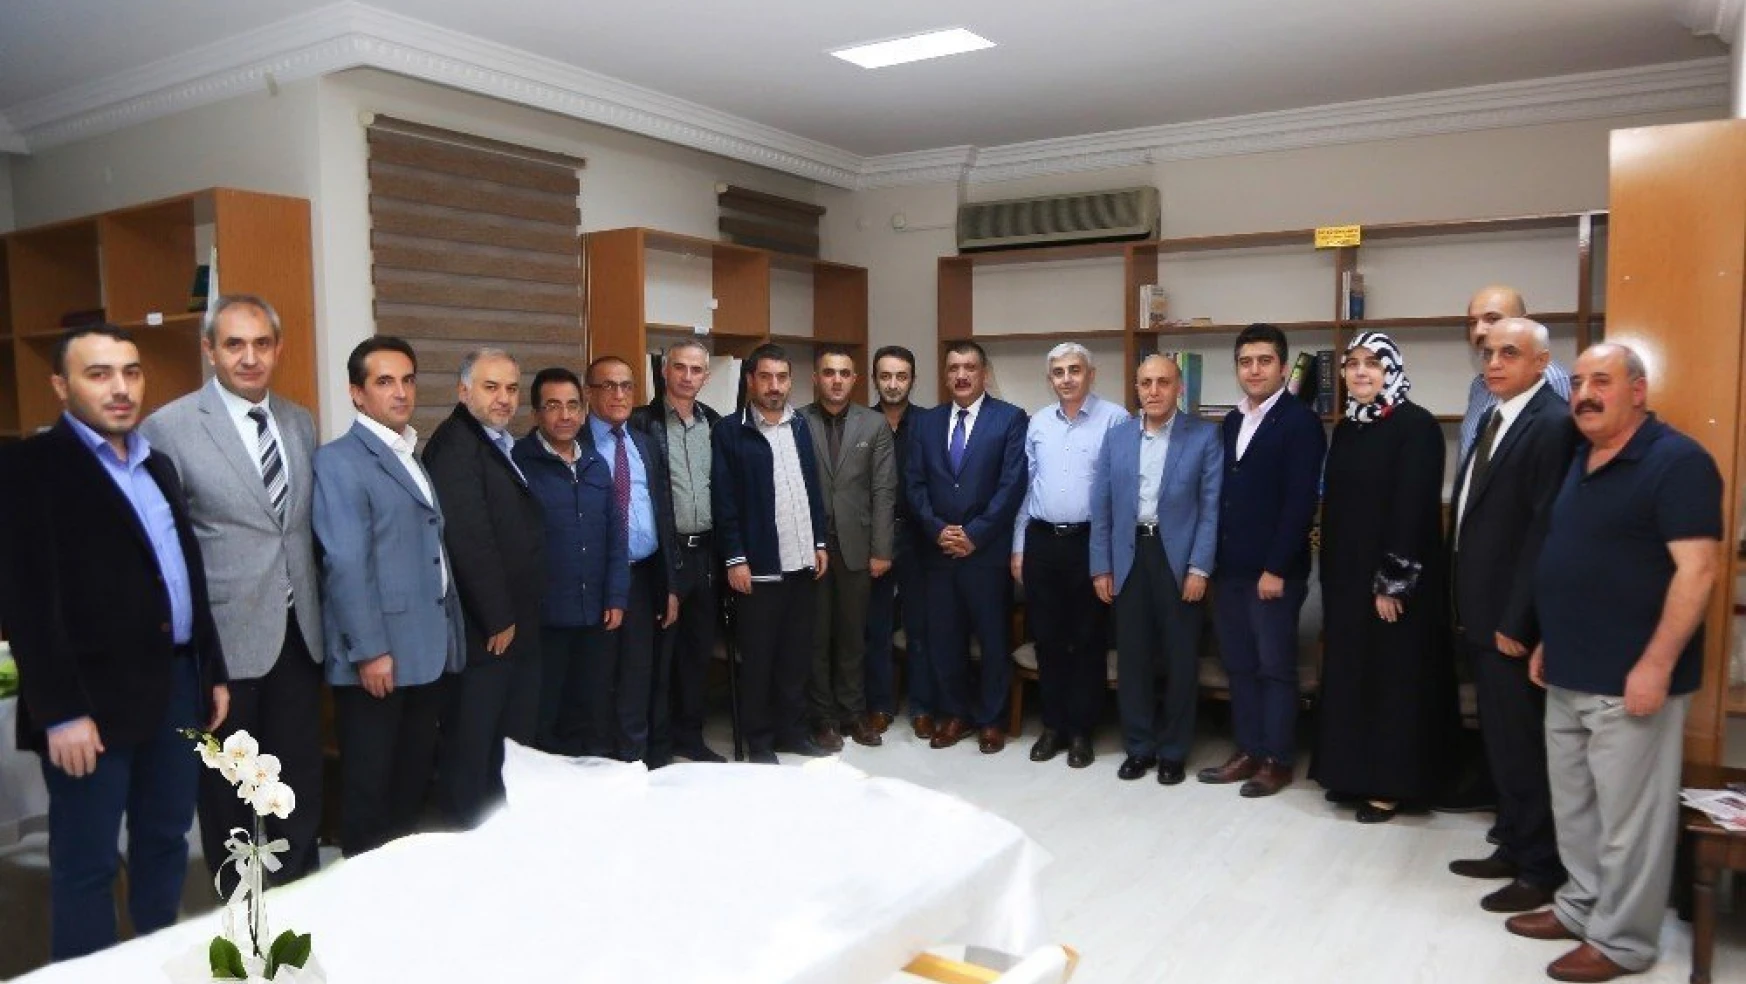 Başkan Gürkan Tabip Odası Yönetimi ile bir araya geldi